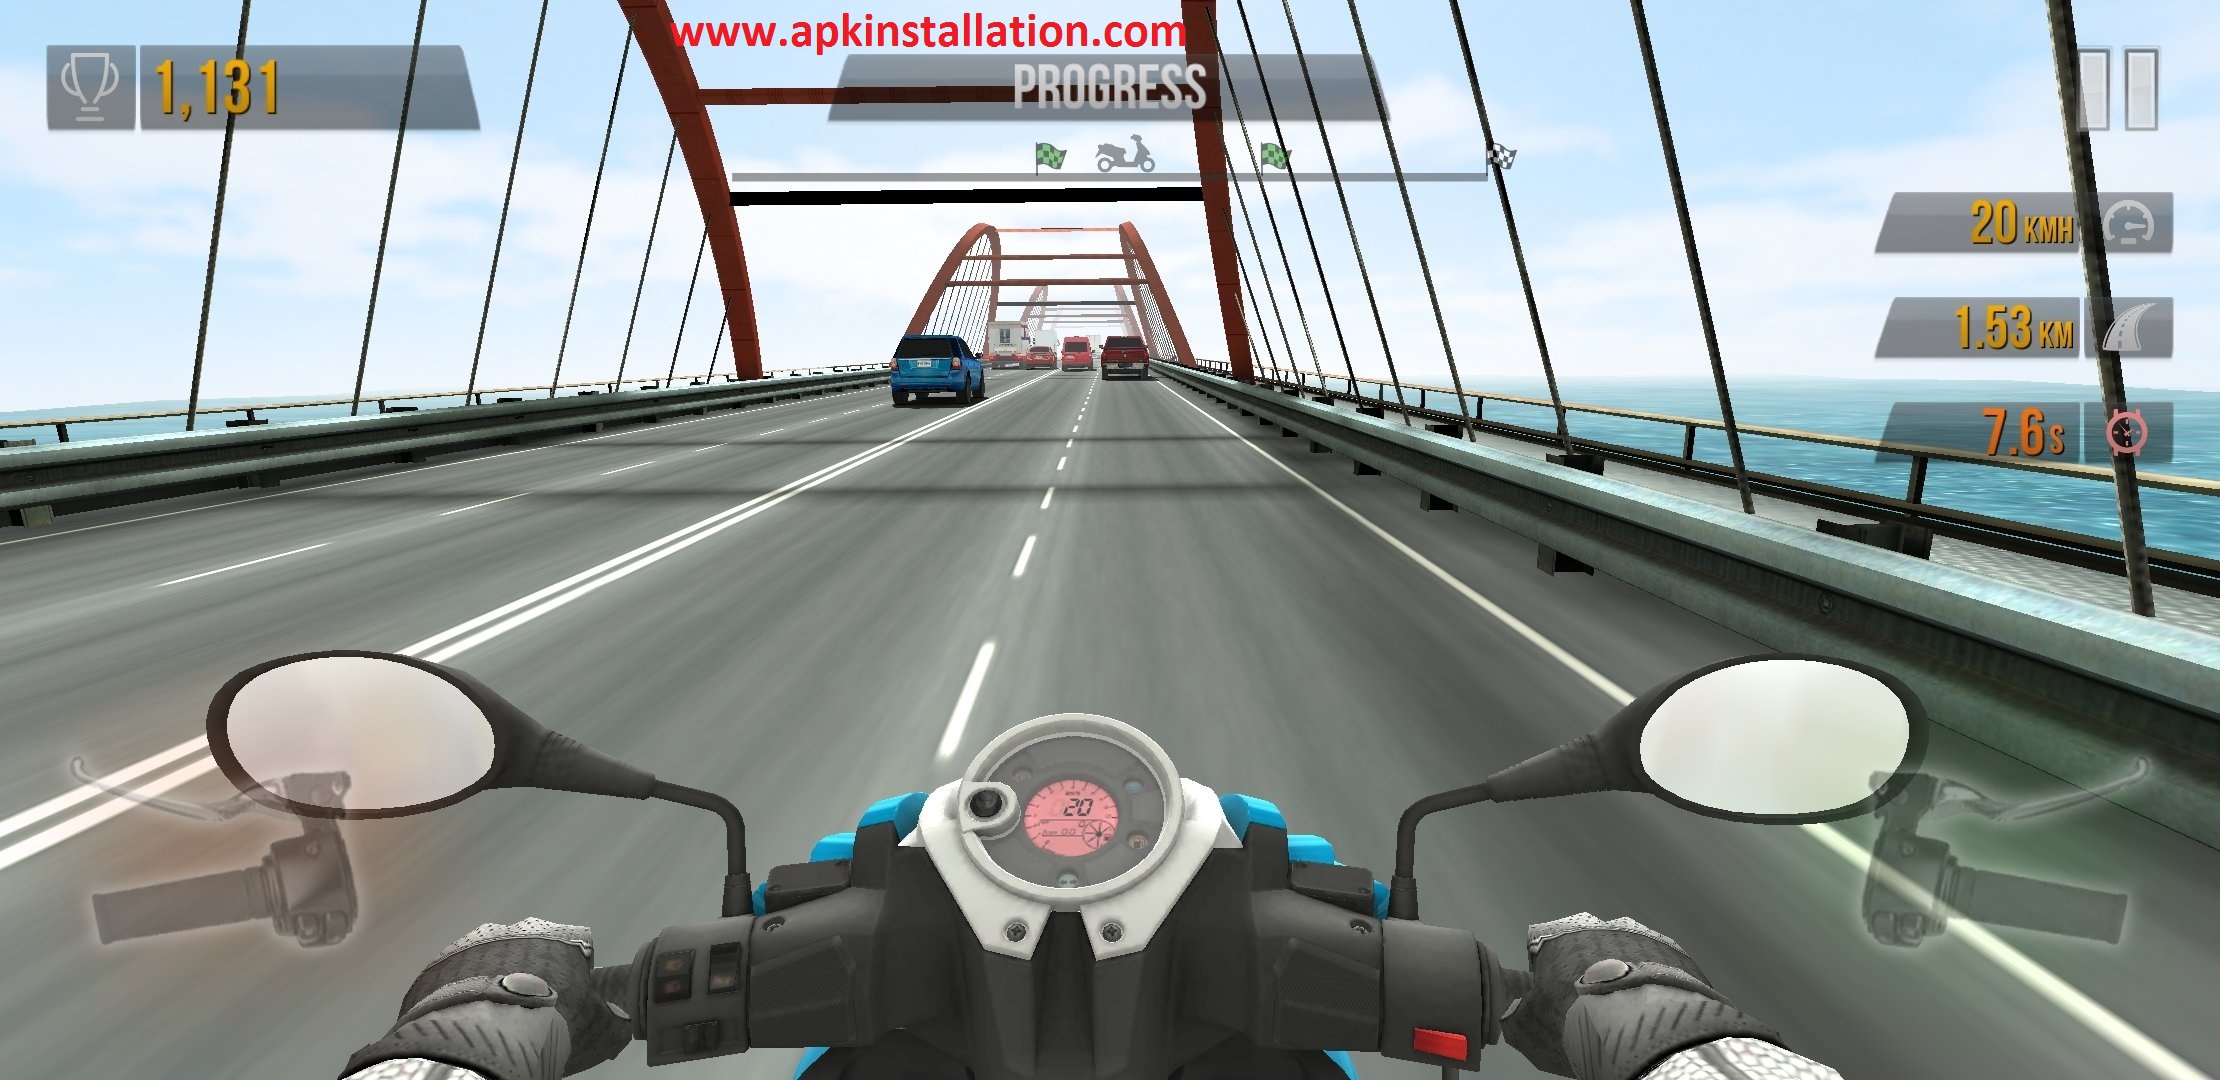 traffic rider hack apk 2020